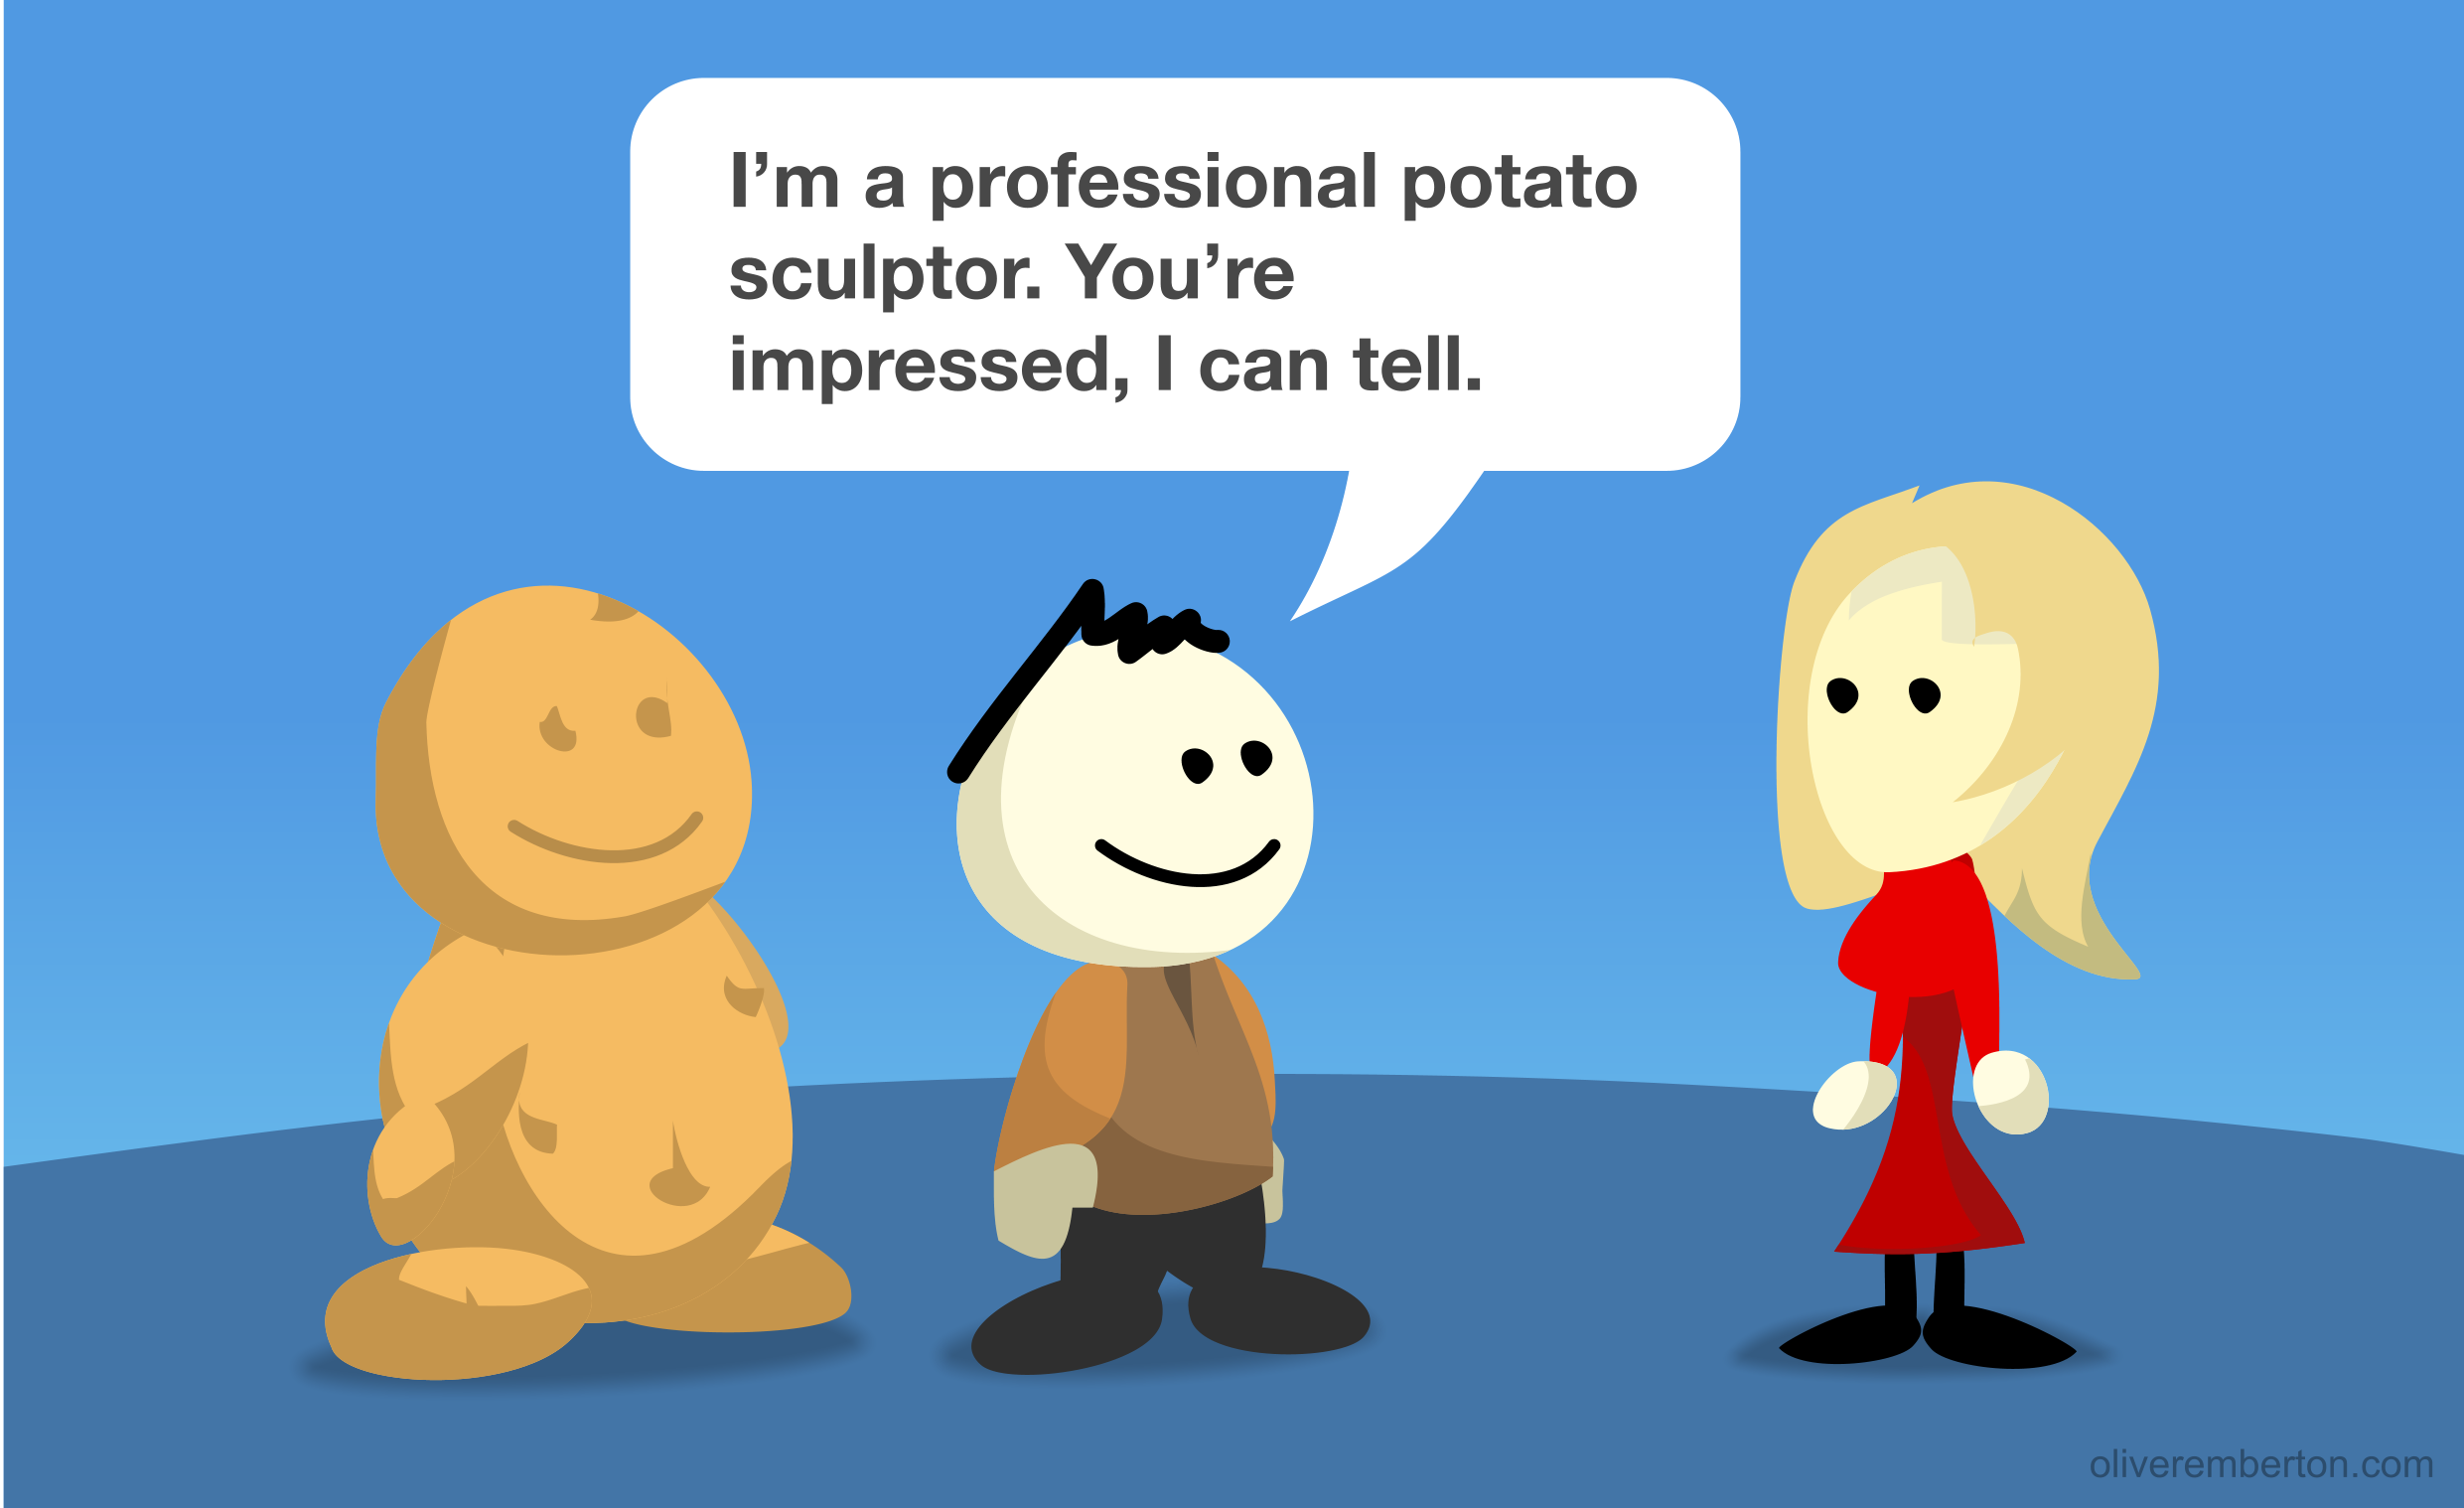 Potato sculptor